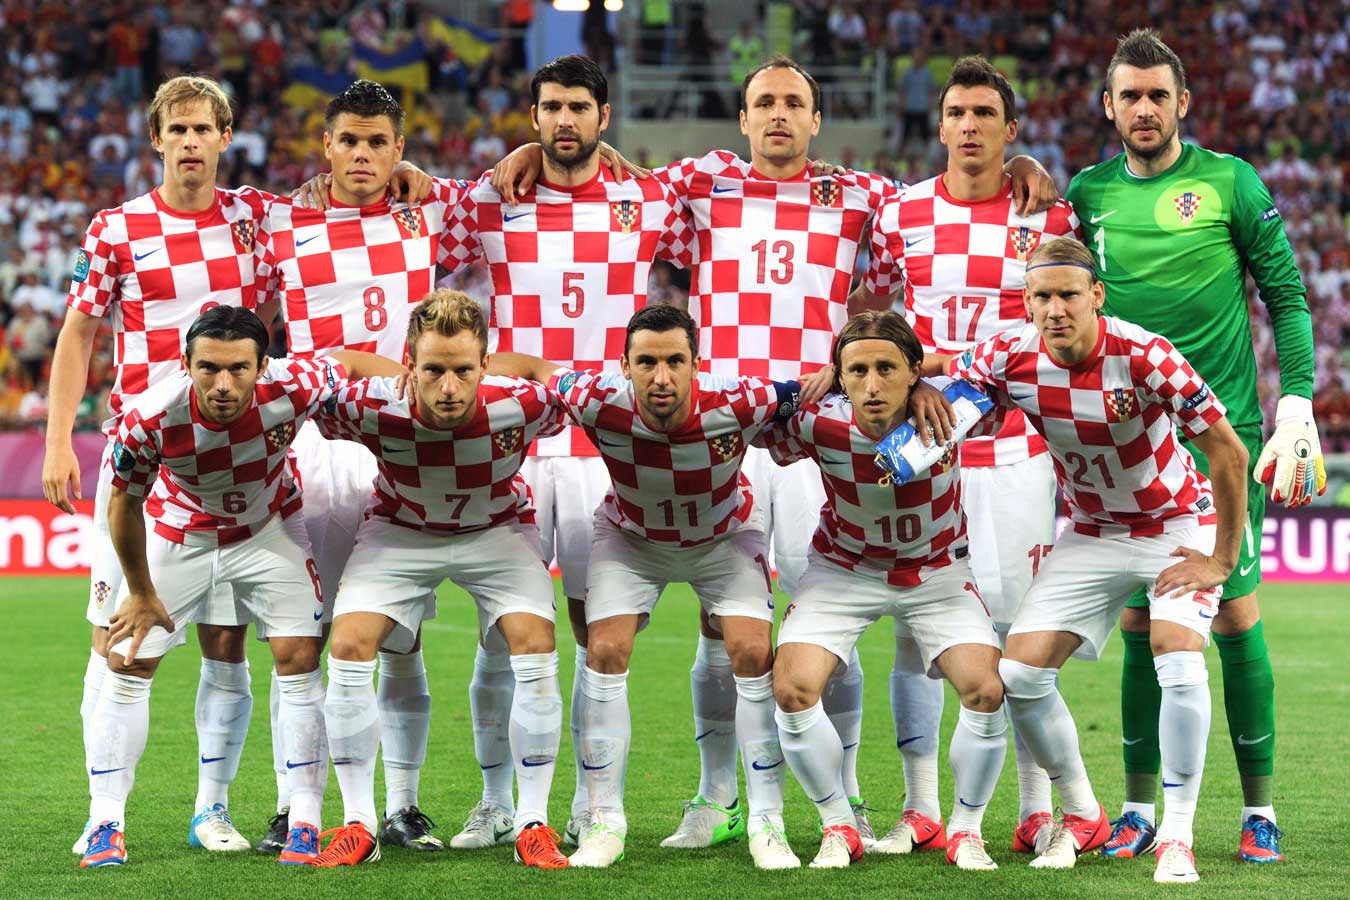 克罗地亚足球队竞猜,克罗地亚足球队,格子军团,世界杯黑马,莫德里奇